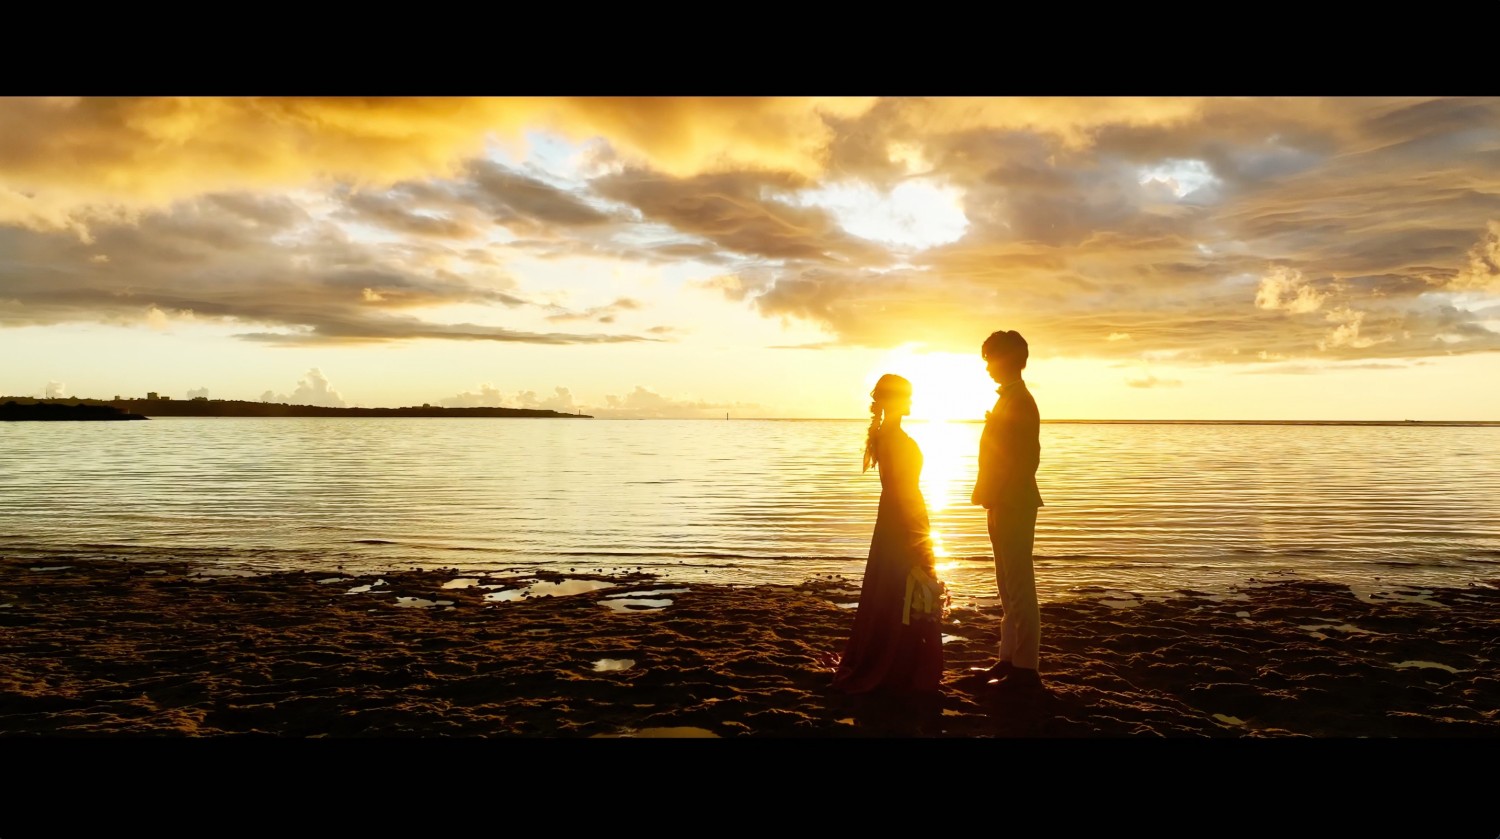 「ドローンで映す二つの世界」 宮城島、ザネー浜